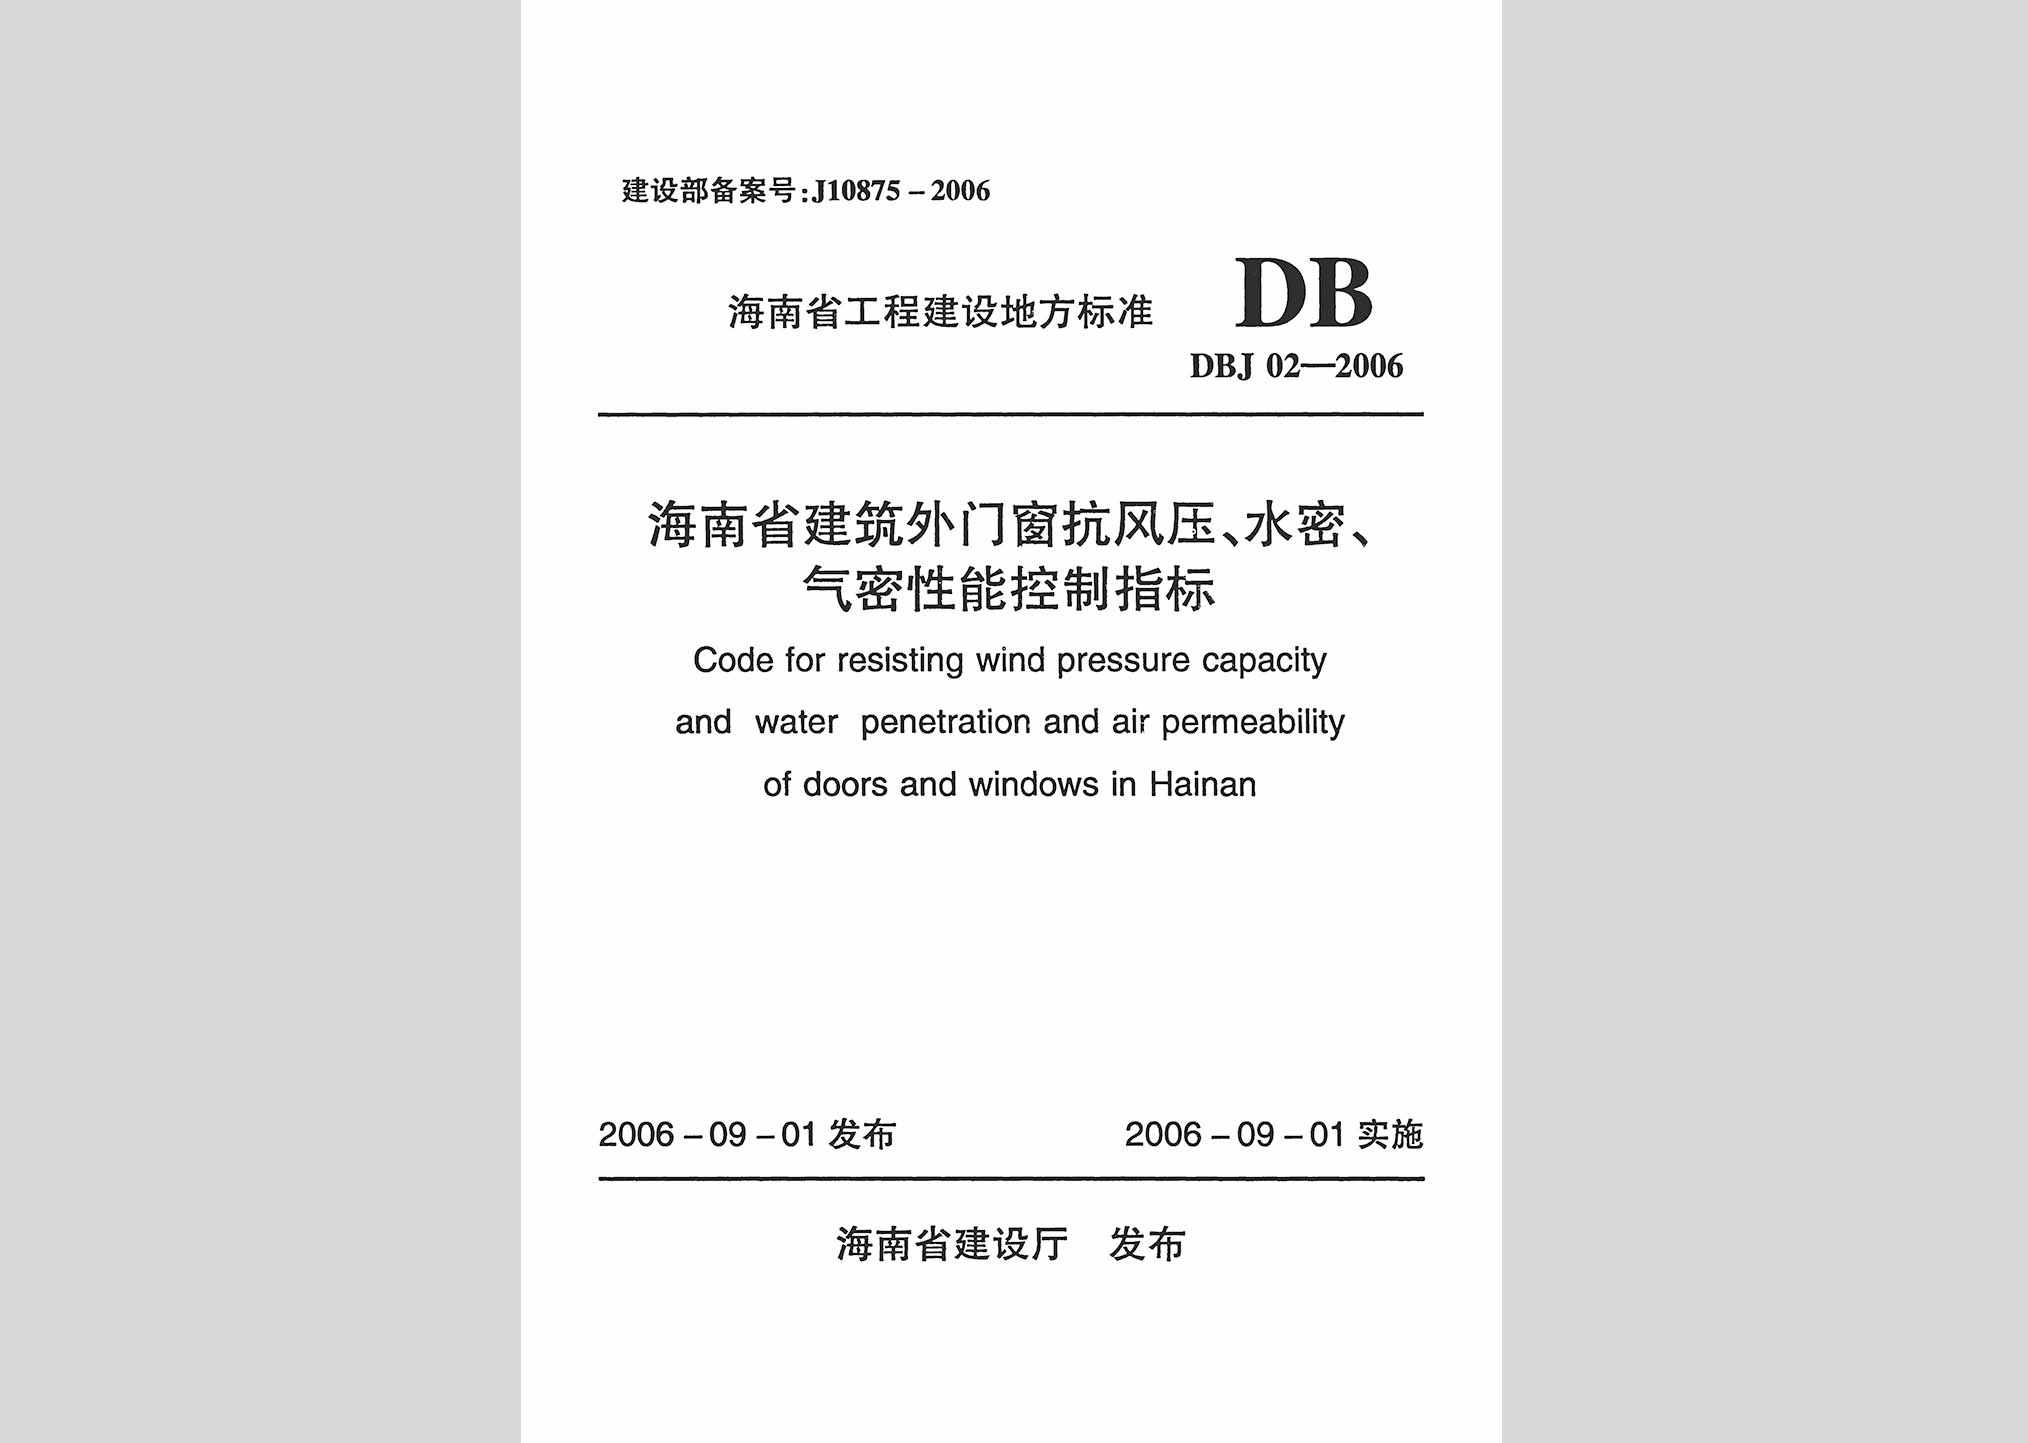 DBJ02-2006：海南省建筑外门窗抗风压、水密、气密性能控制指标